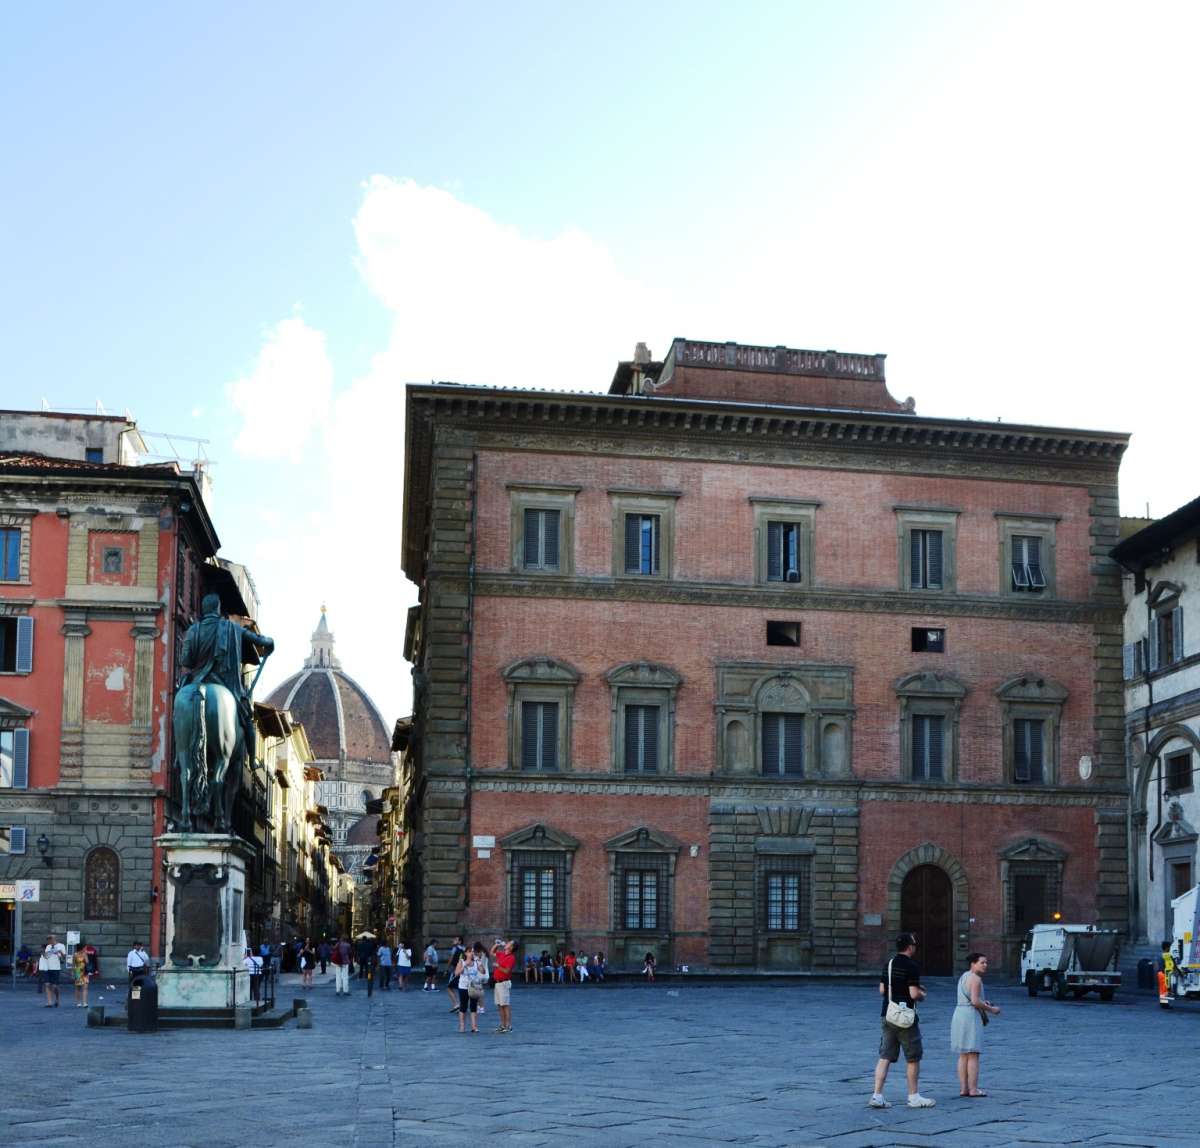 Palazzo Budini-Gattai sulla destra con la "finestra maledetta"